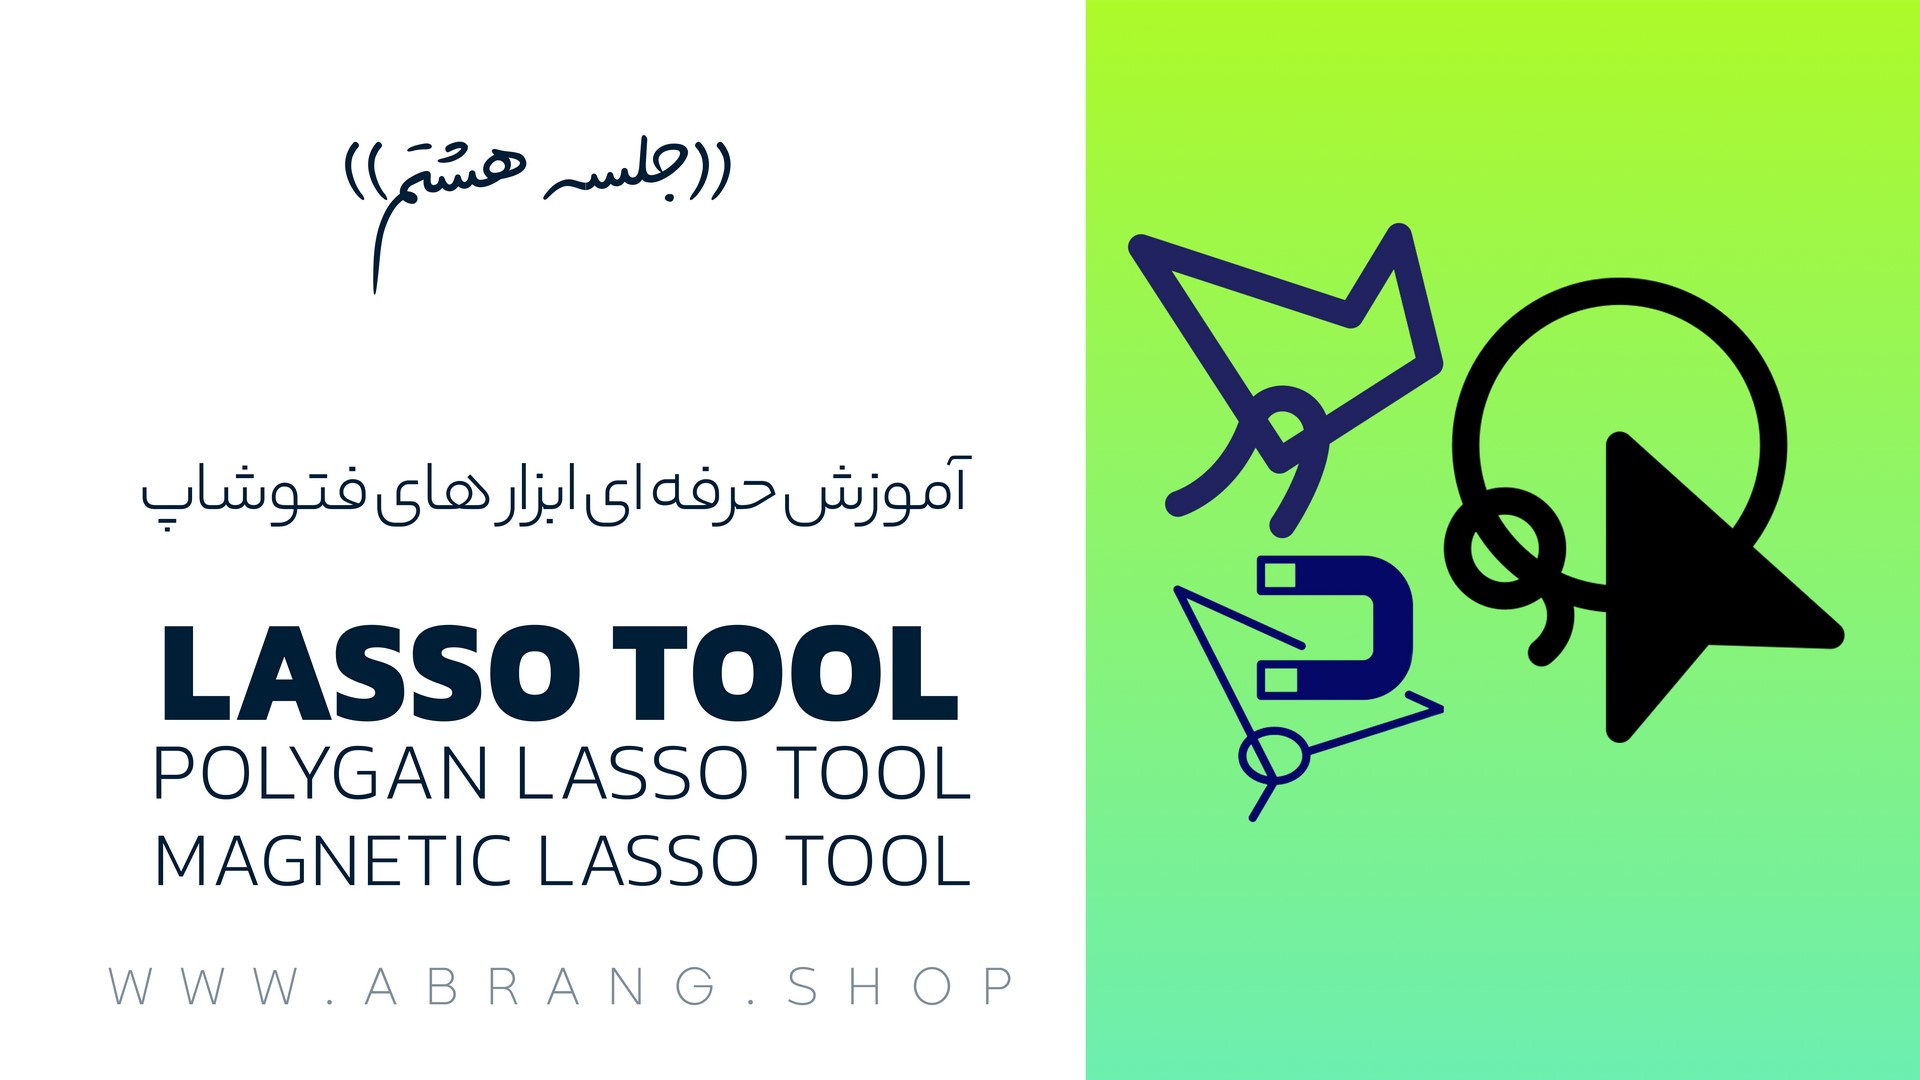 ابزار lasoo tools در فتوشاپ | جلسه هشتم آموزش رایگان فتوشاپ